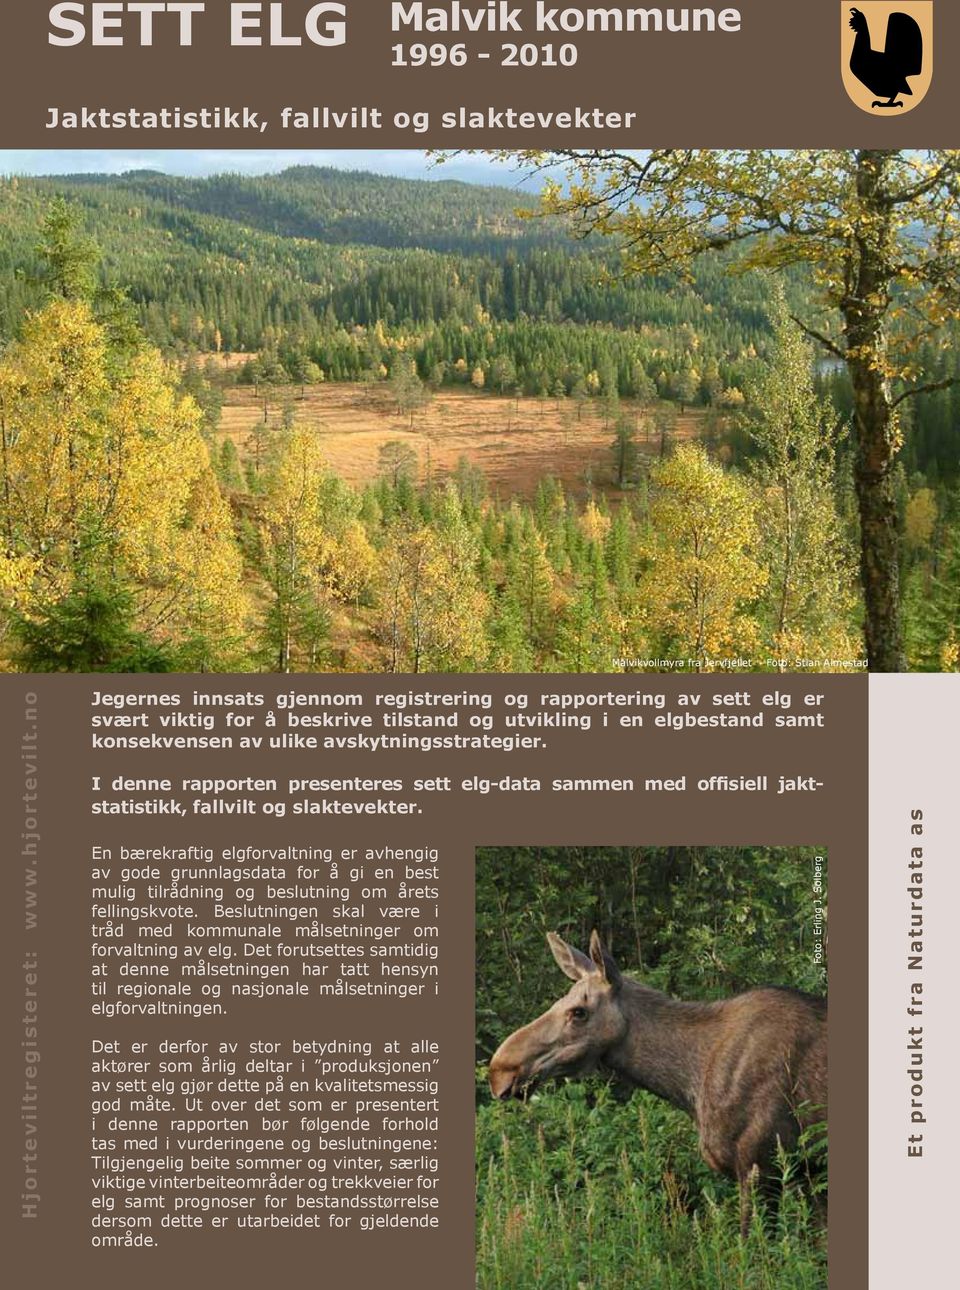 I denne rapporten presenteres sett elg-data sammen med offisiell jaktstatistikk, fallvilt og slaktevekter.